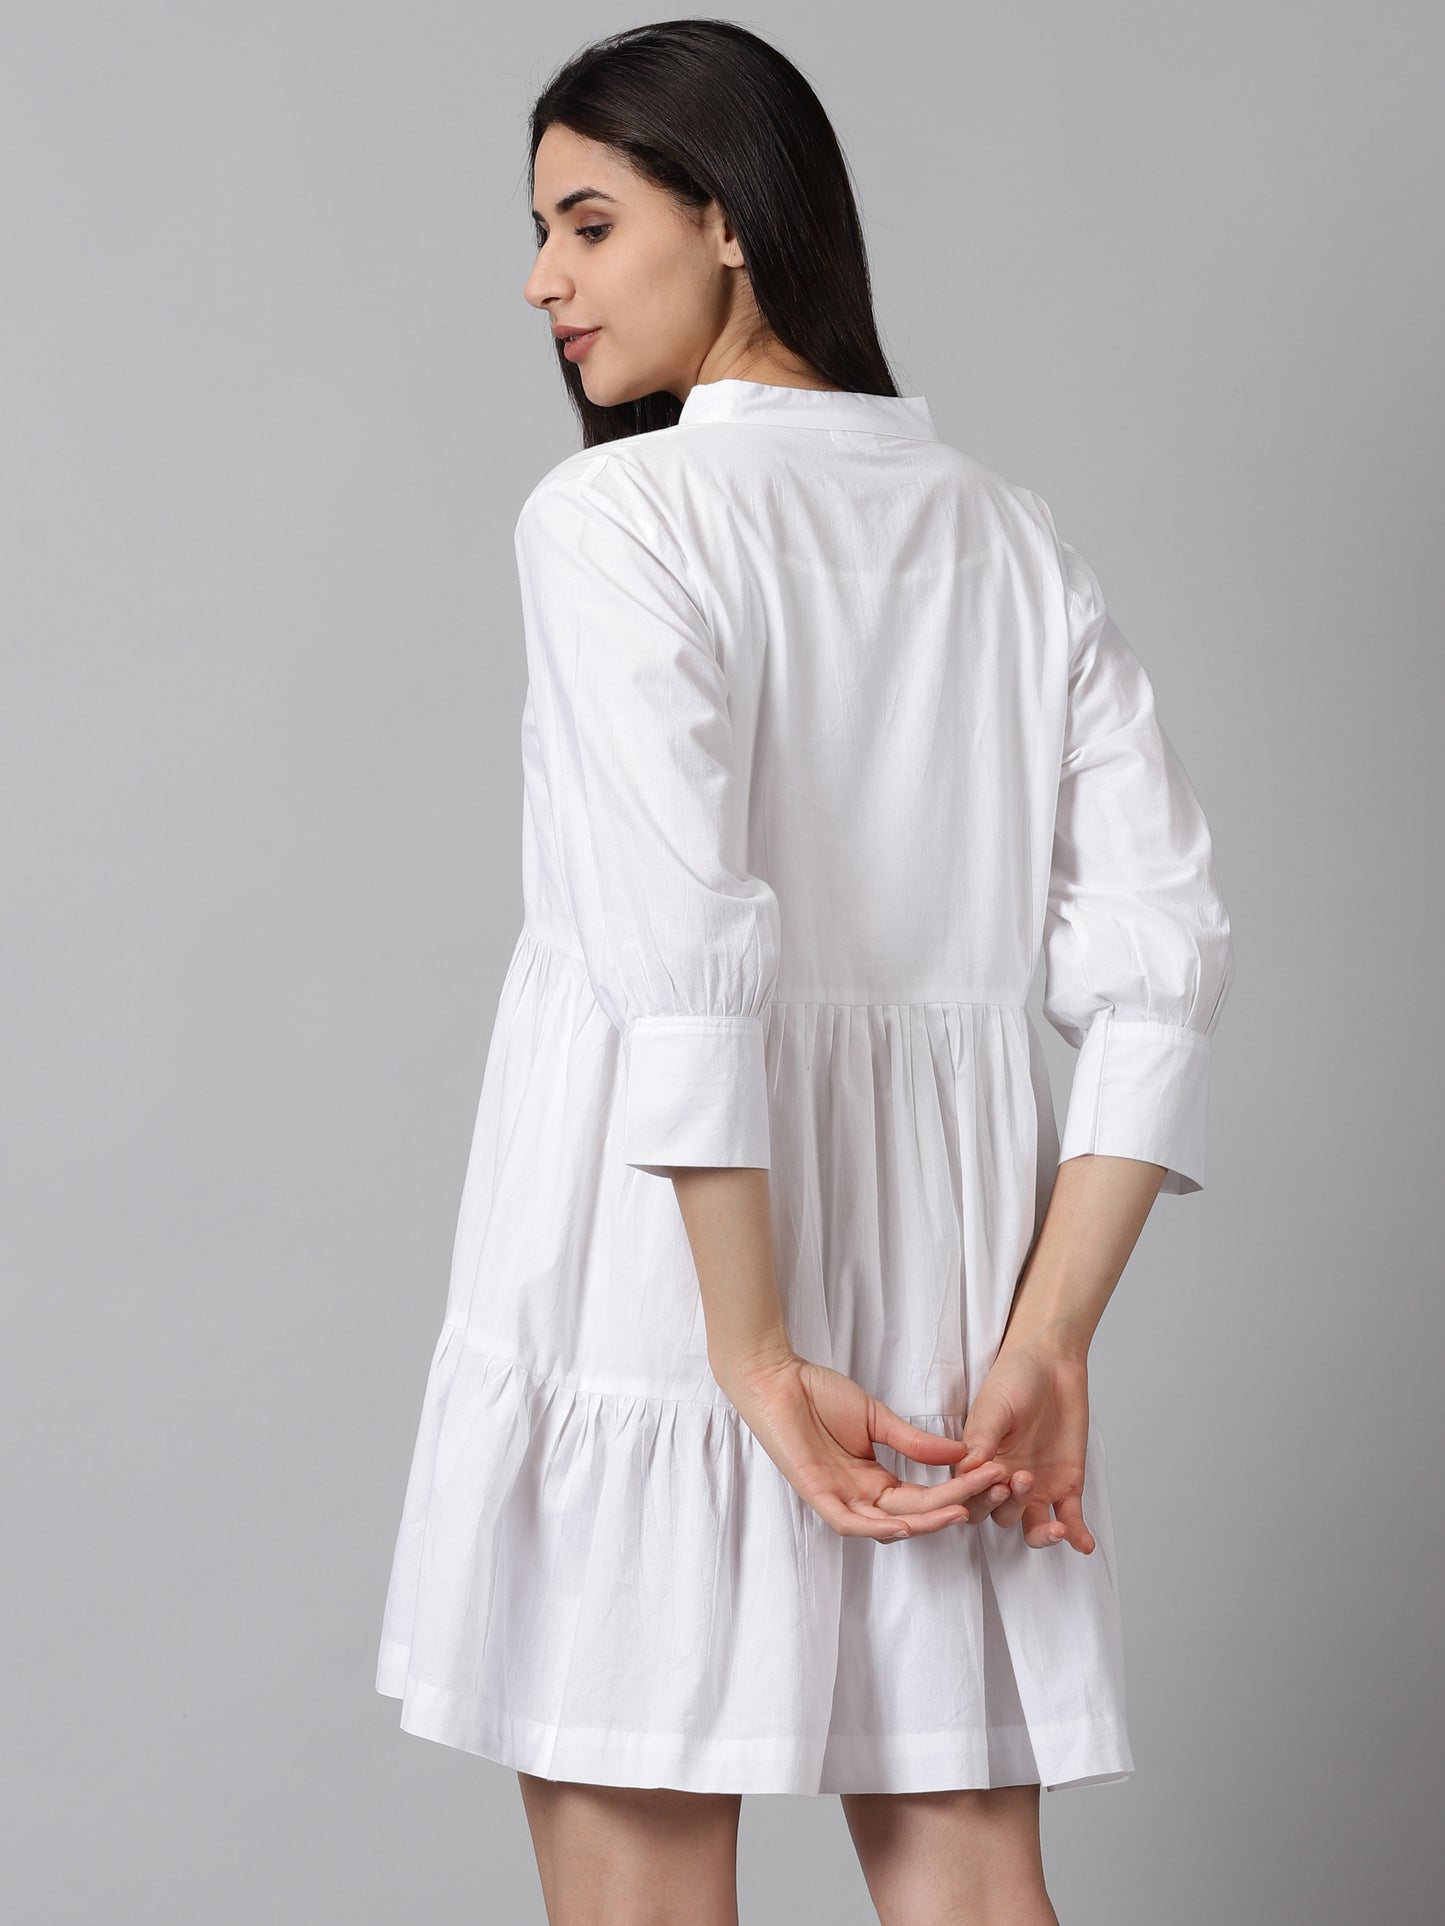 White Lily Dress